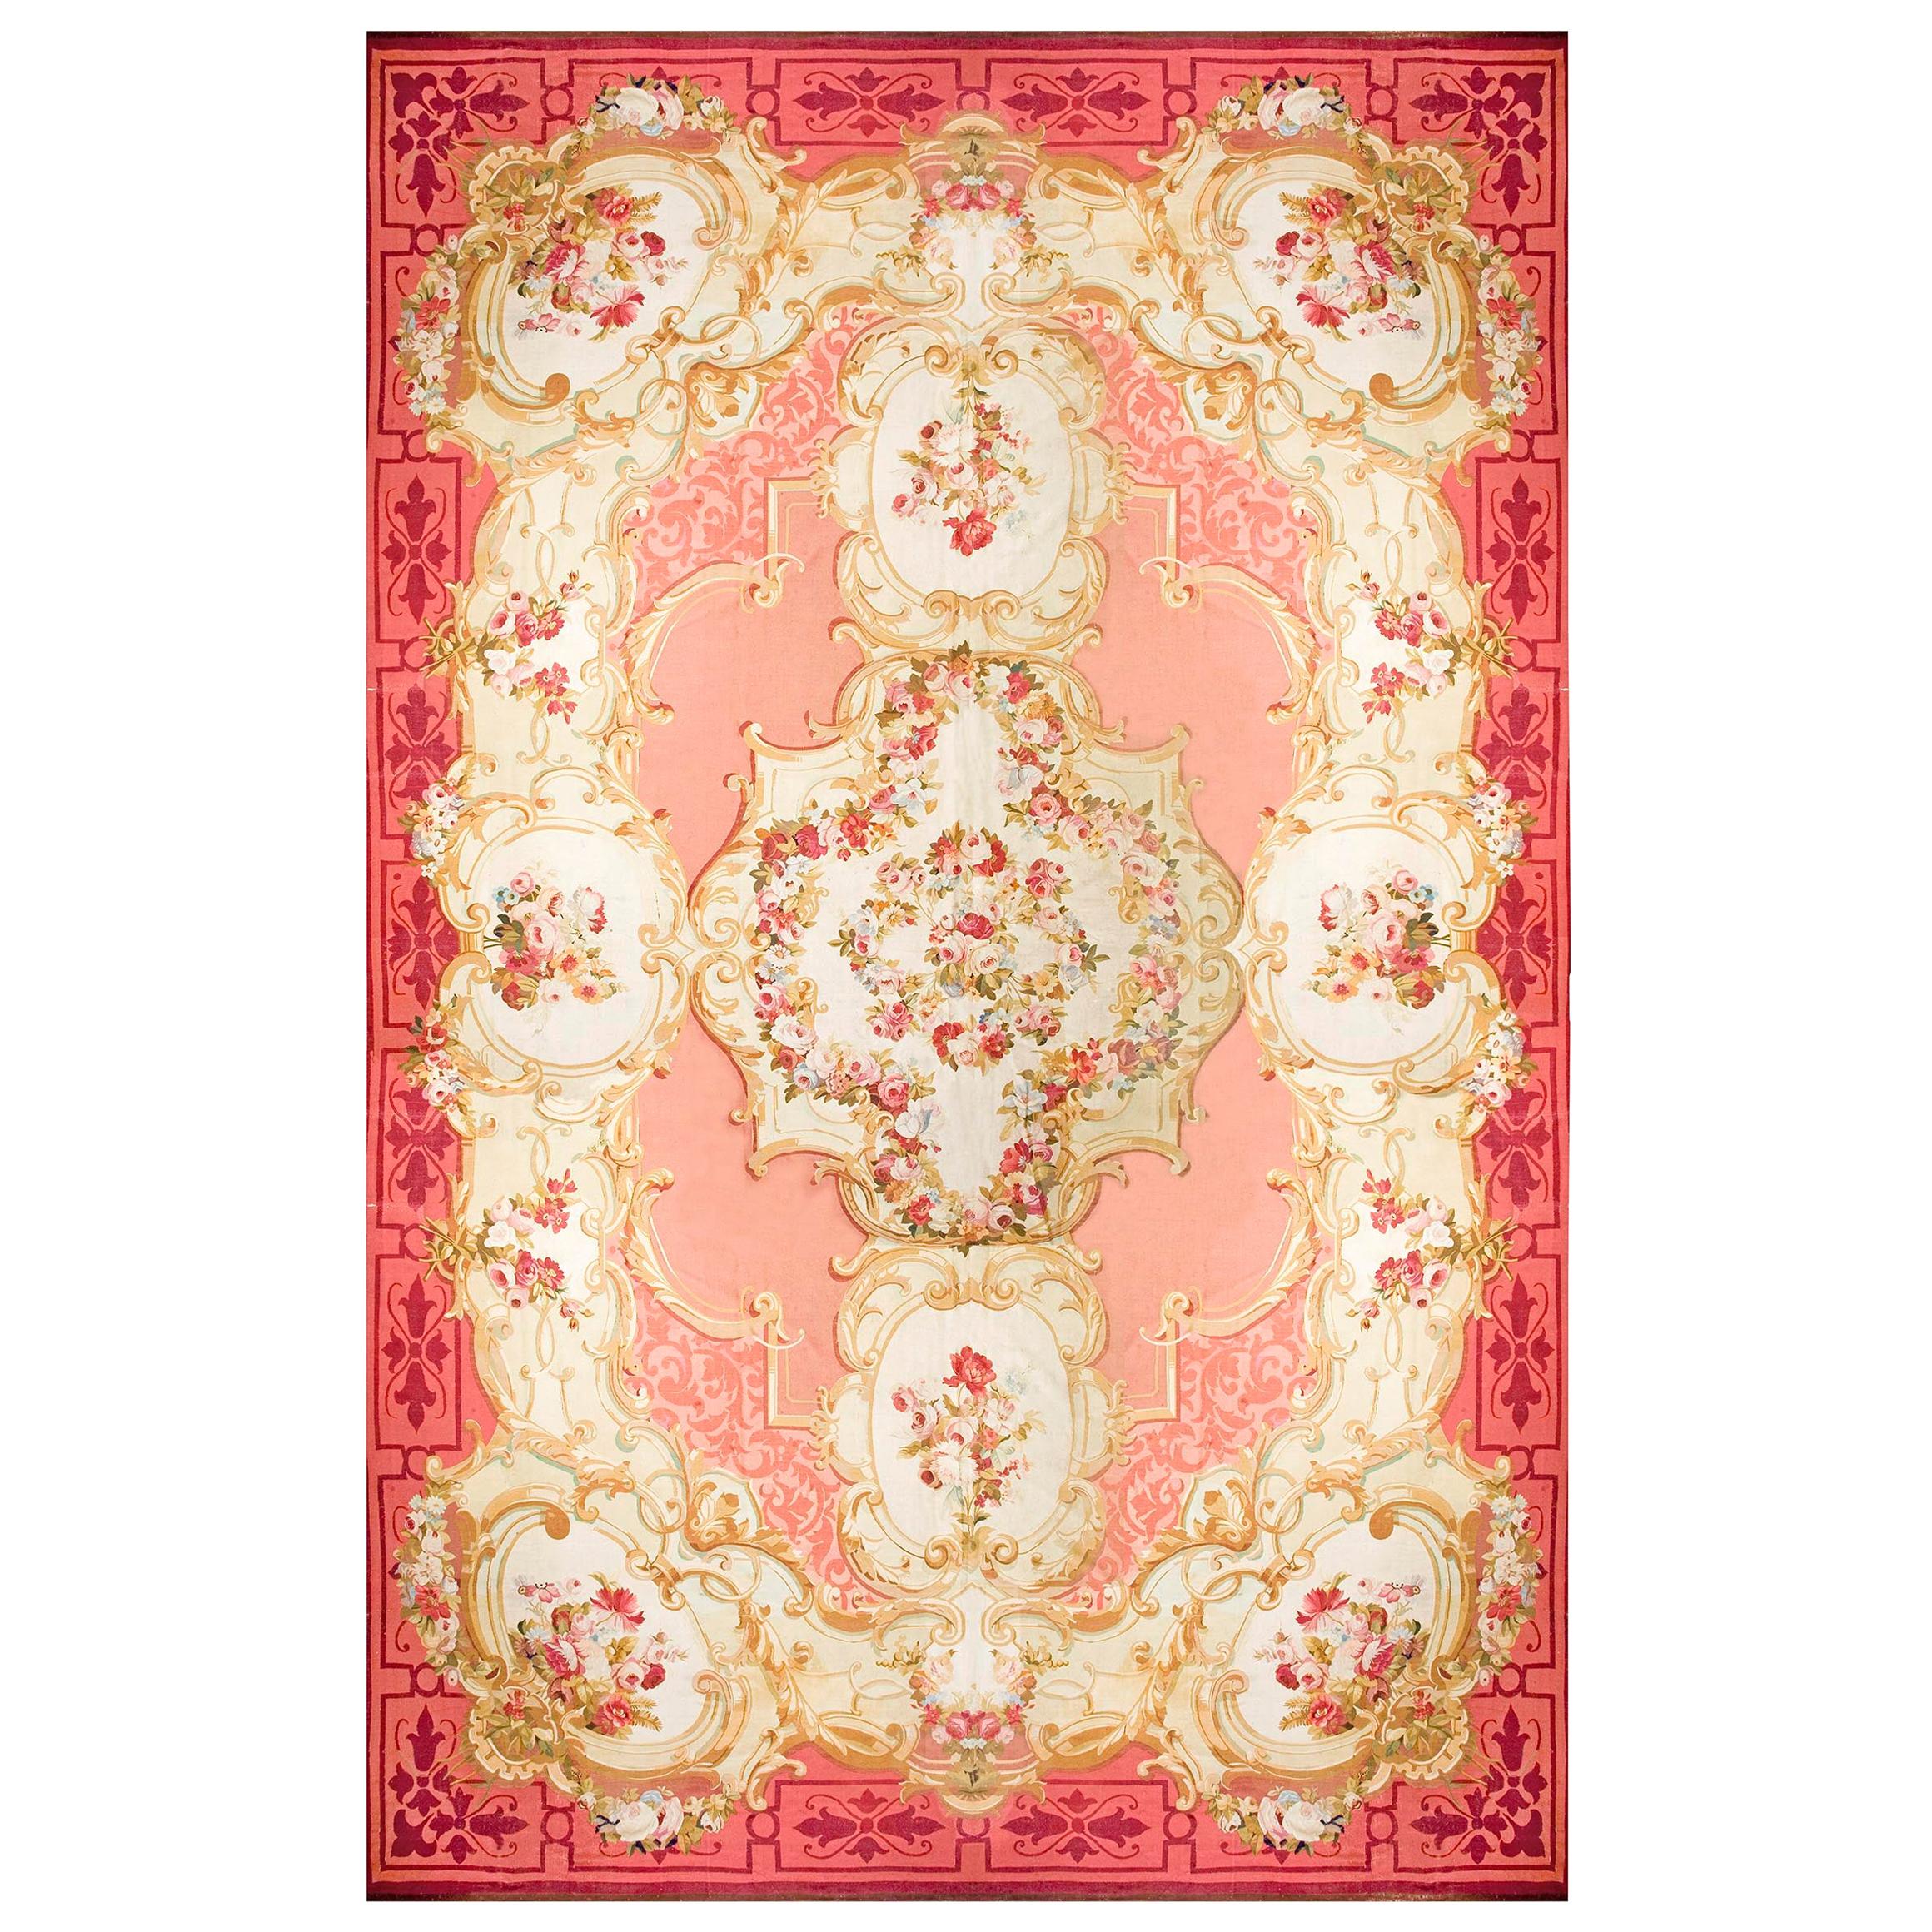 Französischer Aubusson-Teppich des 19. Jahrhunderts aus der Zeit Napoleons III ( 18' x 27'-548 x 823 )